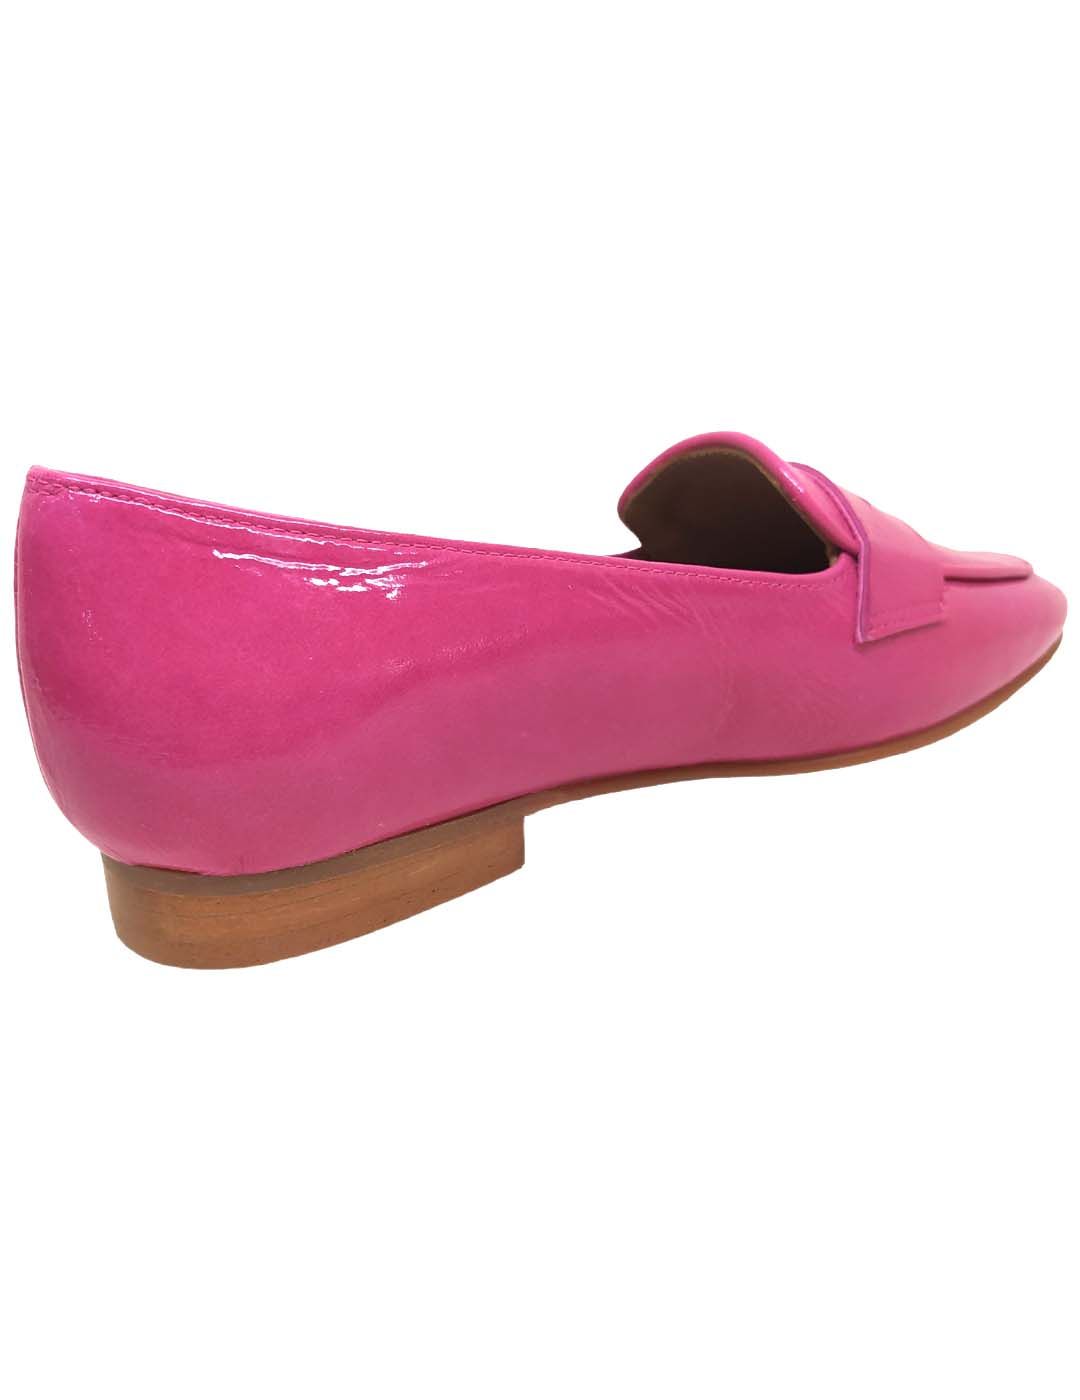 Zapato mocasín 4087 celeste y rosa